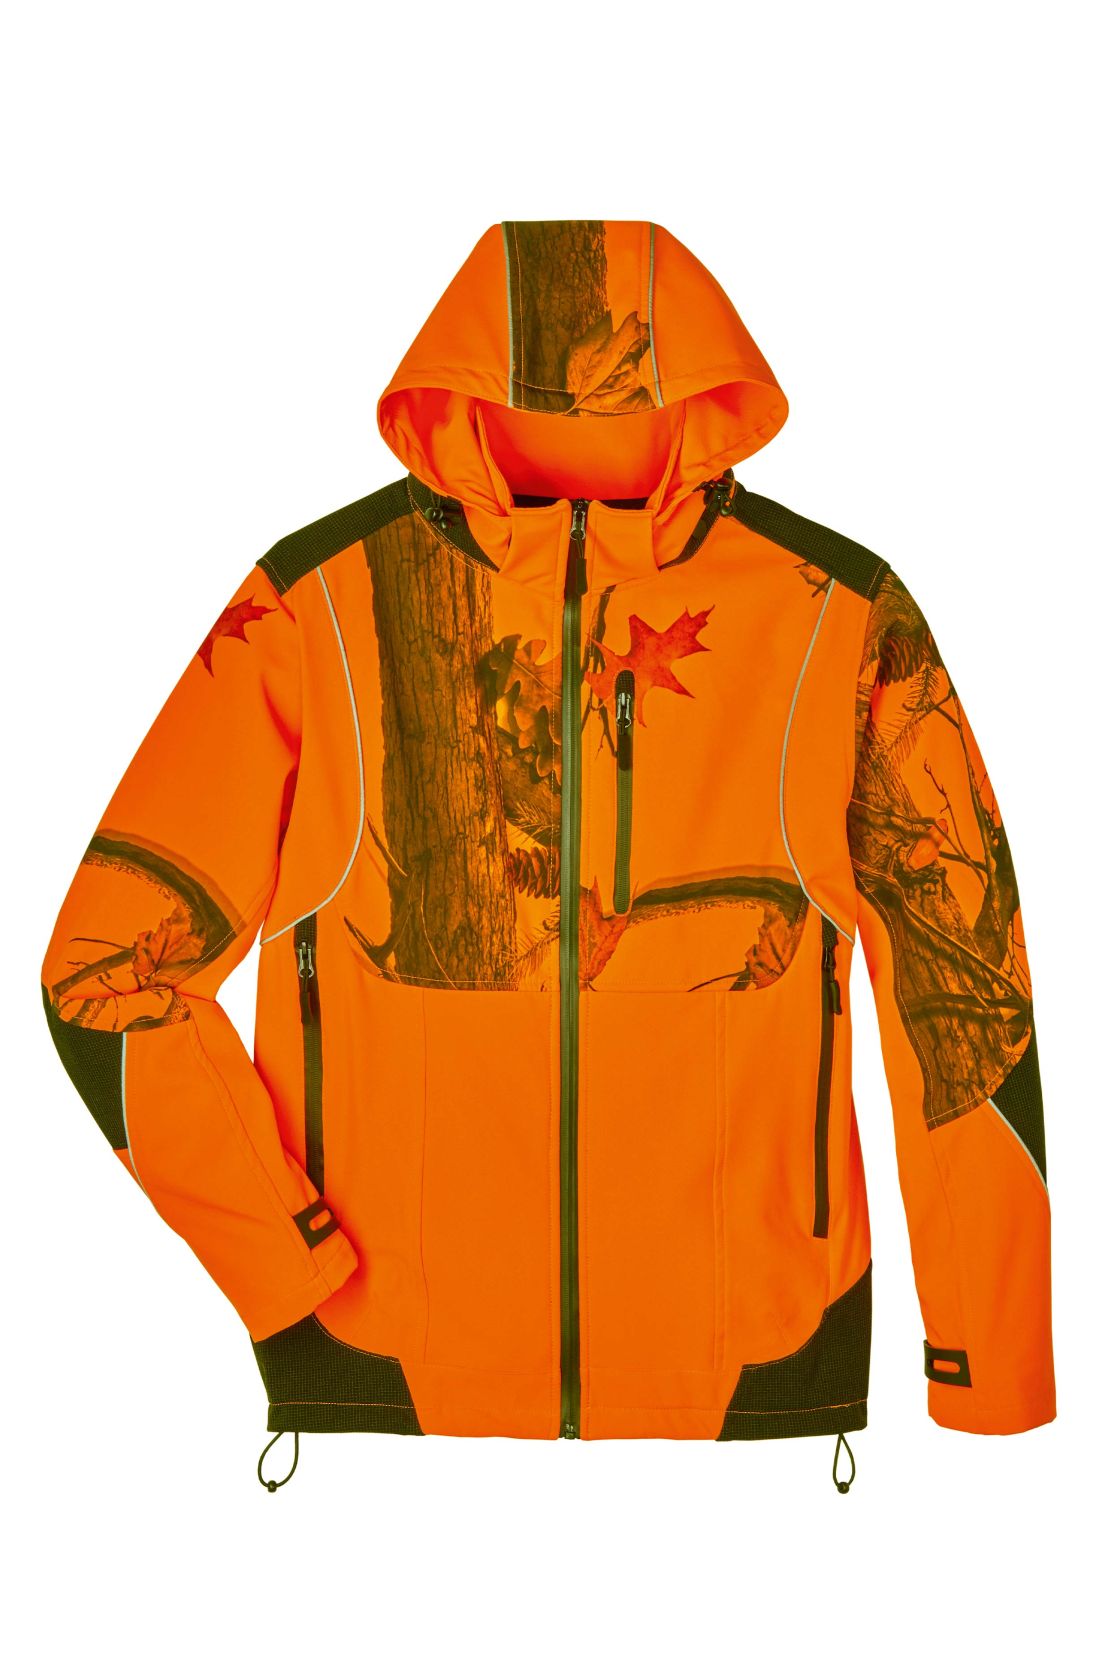 Jäger-Softshelljacke Birke, orange/camouflage orange/camouflage